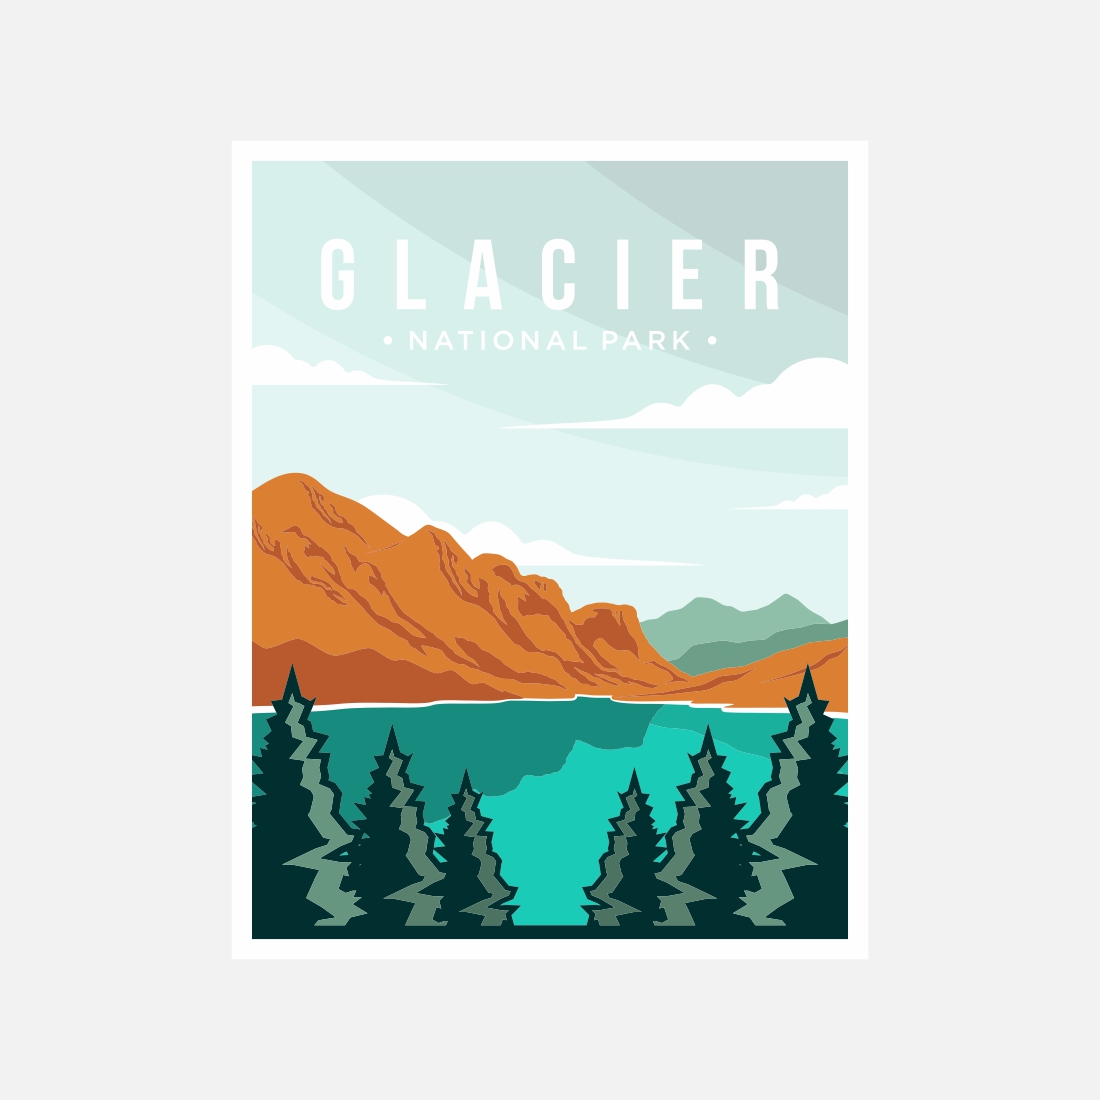 Glacier National Park poster vector illustration design – Only $8 preview image.